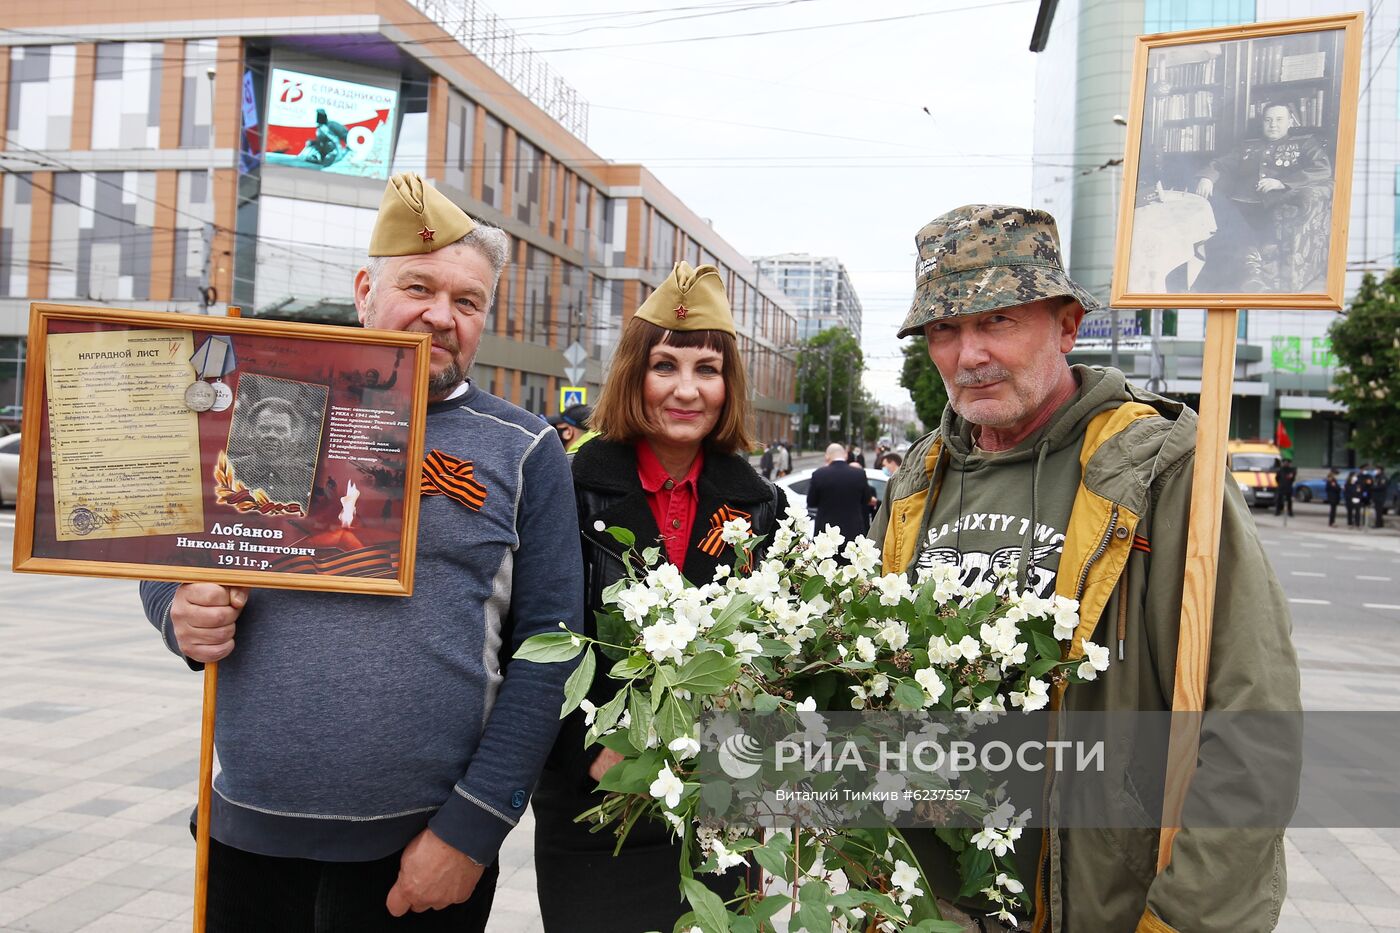 Акция "Бессмертный полк" в городах России 